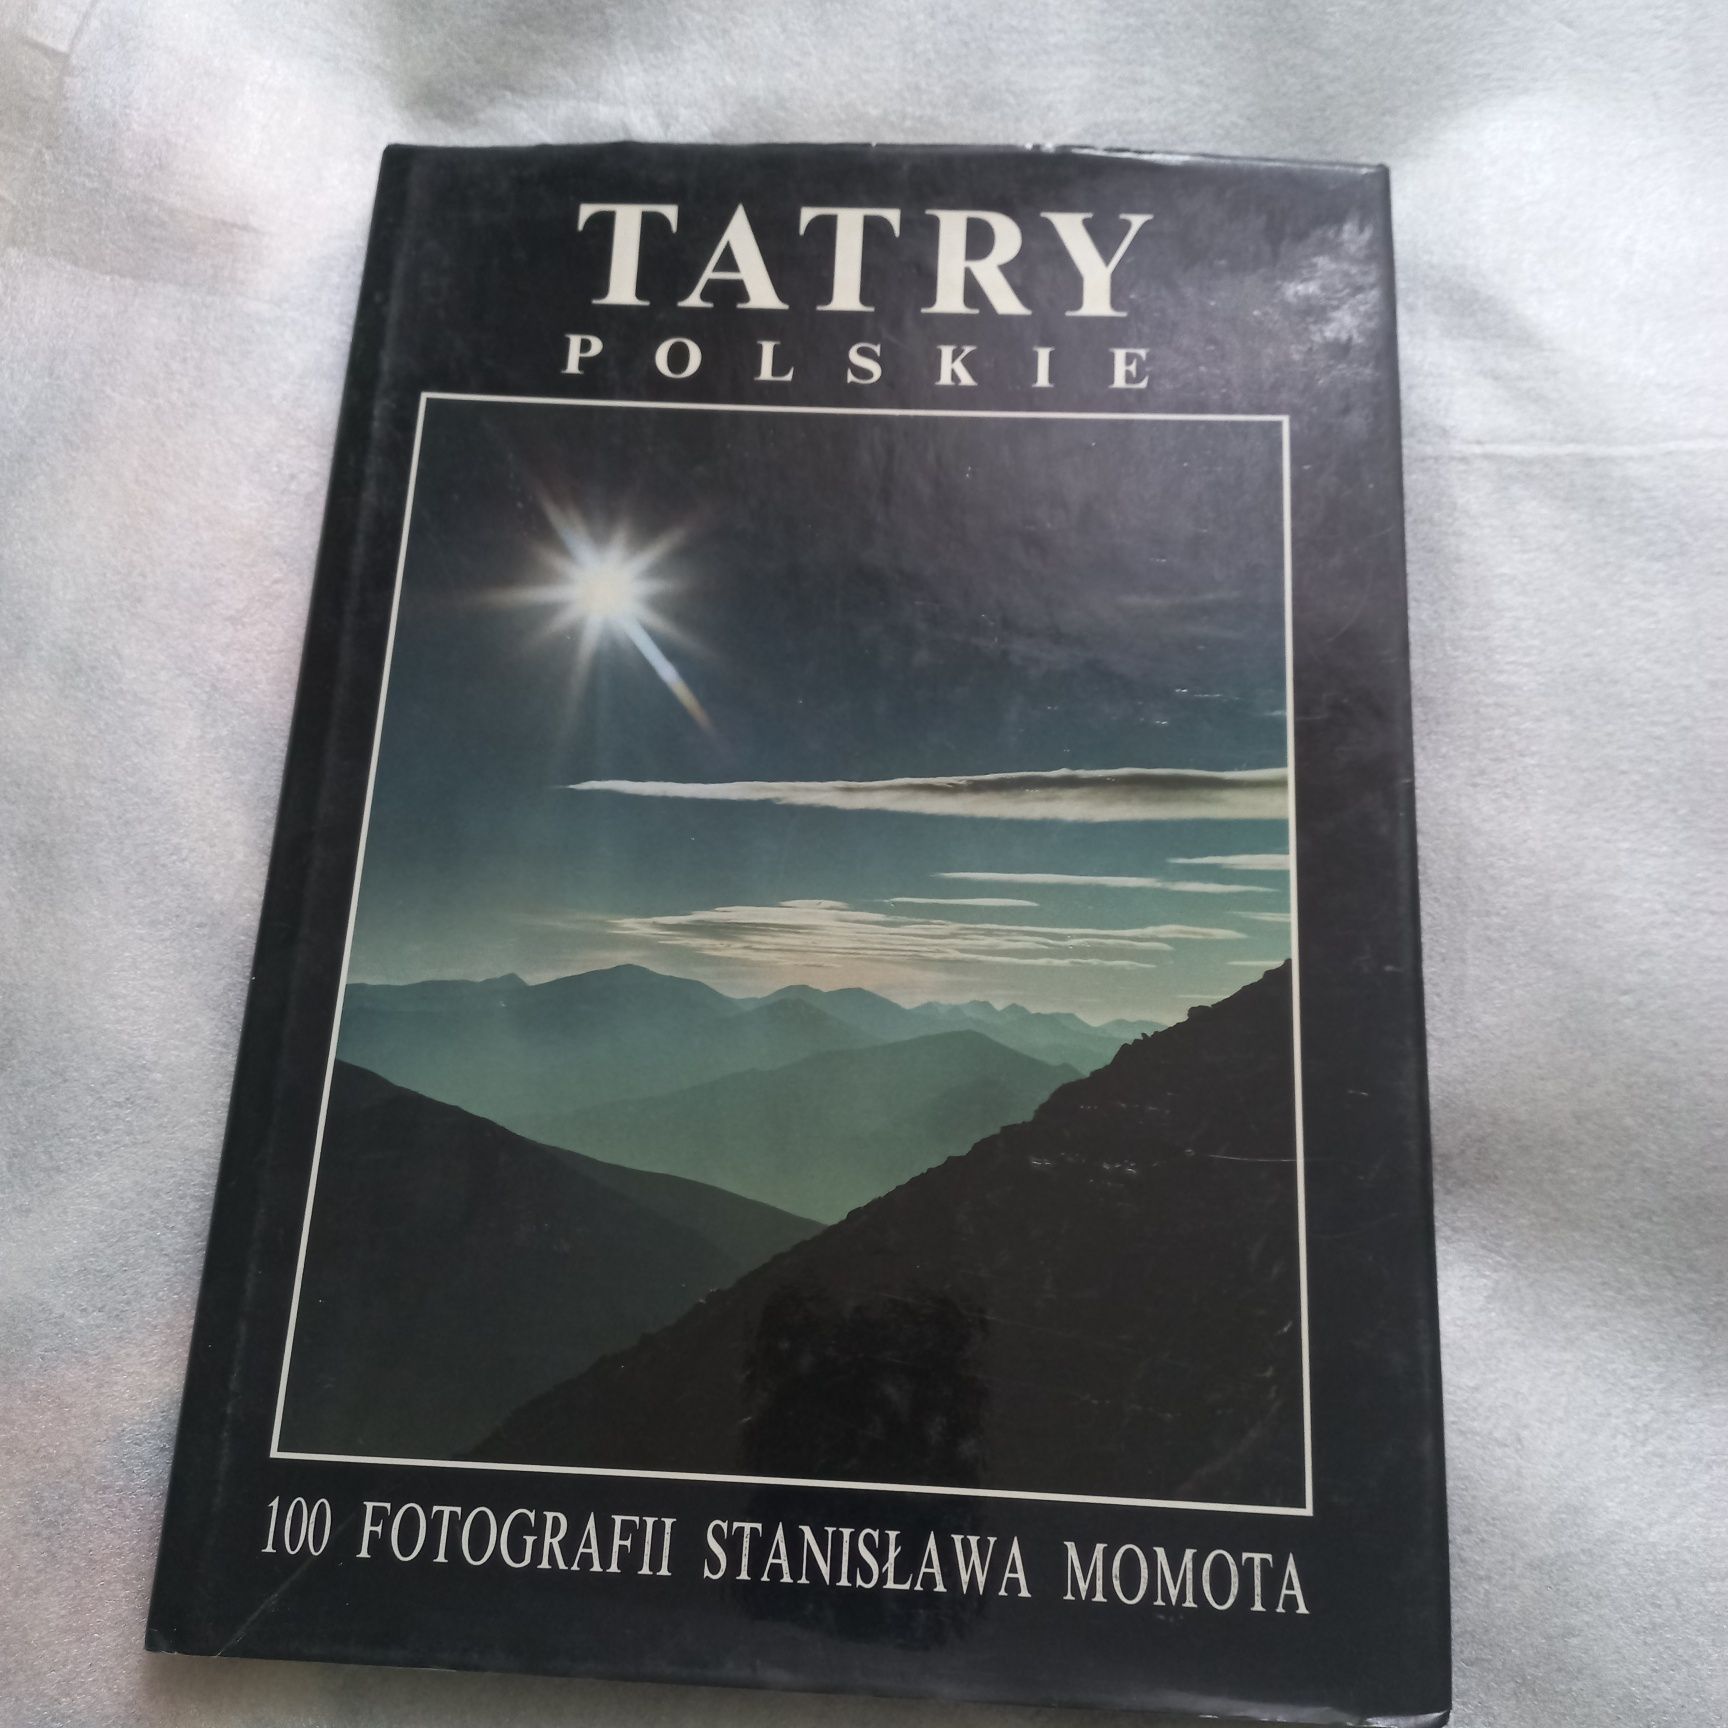 Tatry polskie 100 fotografii Stanisława Mamota